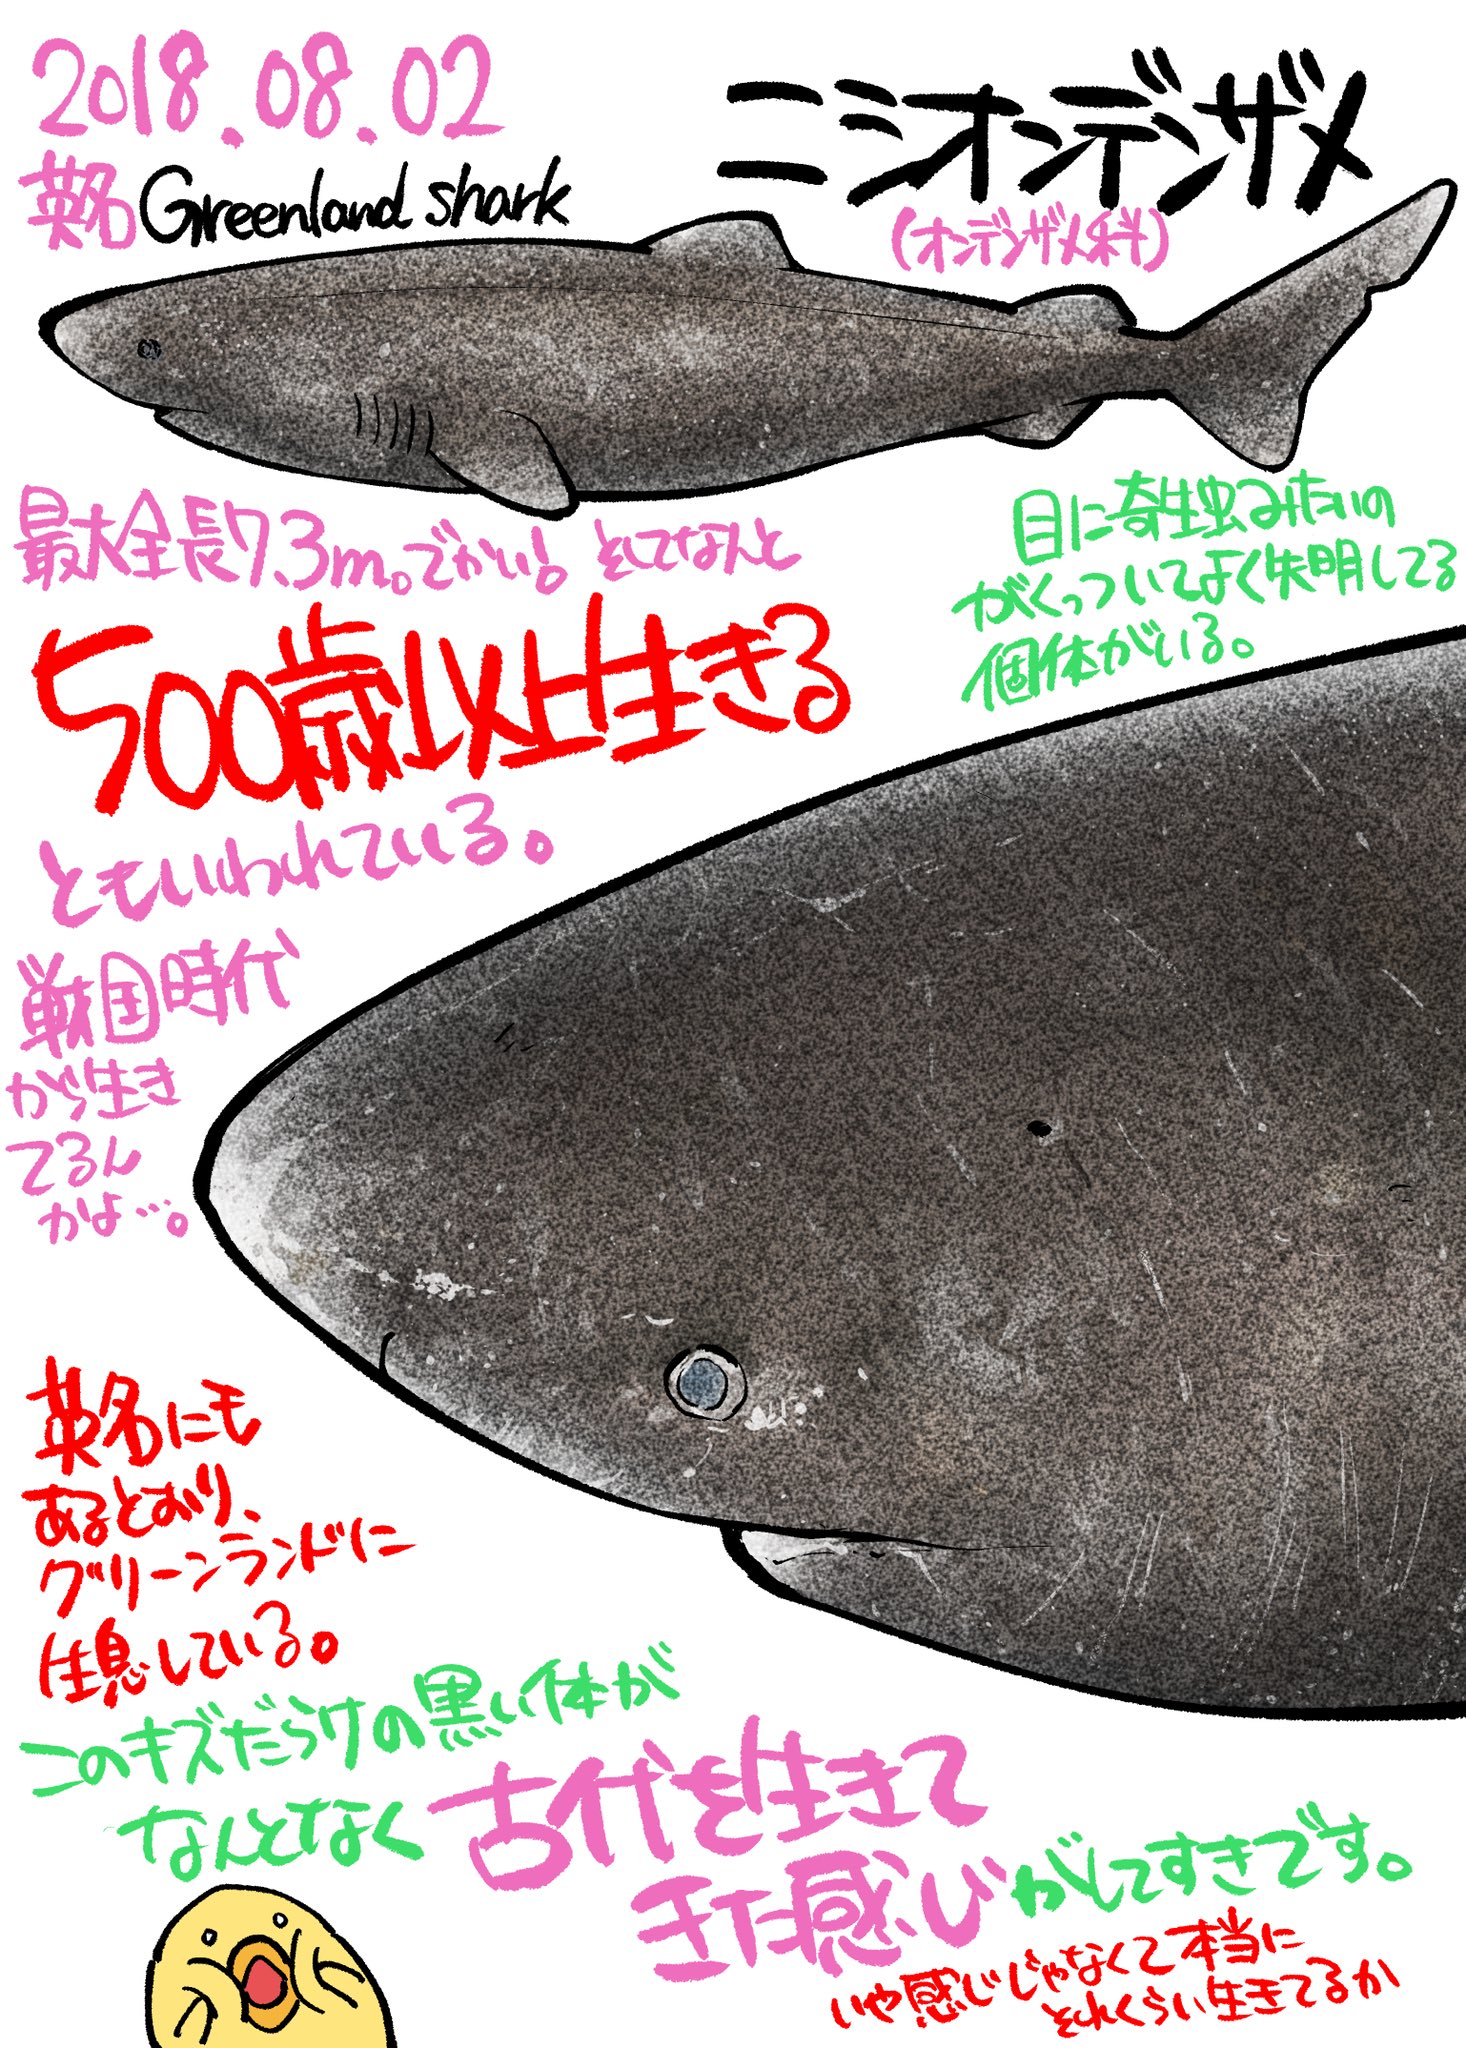 サメ図鑑 Twitter